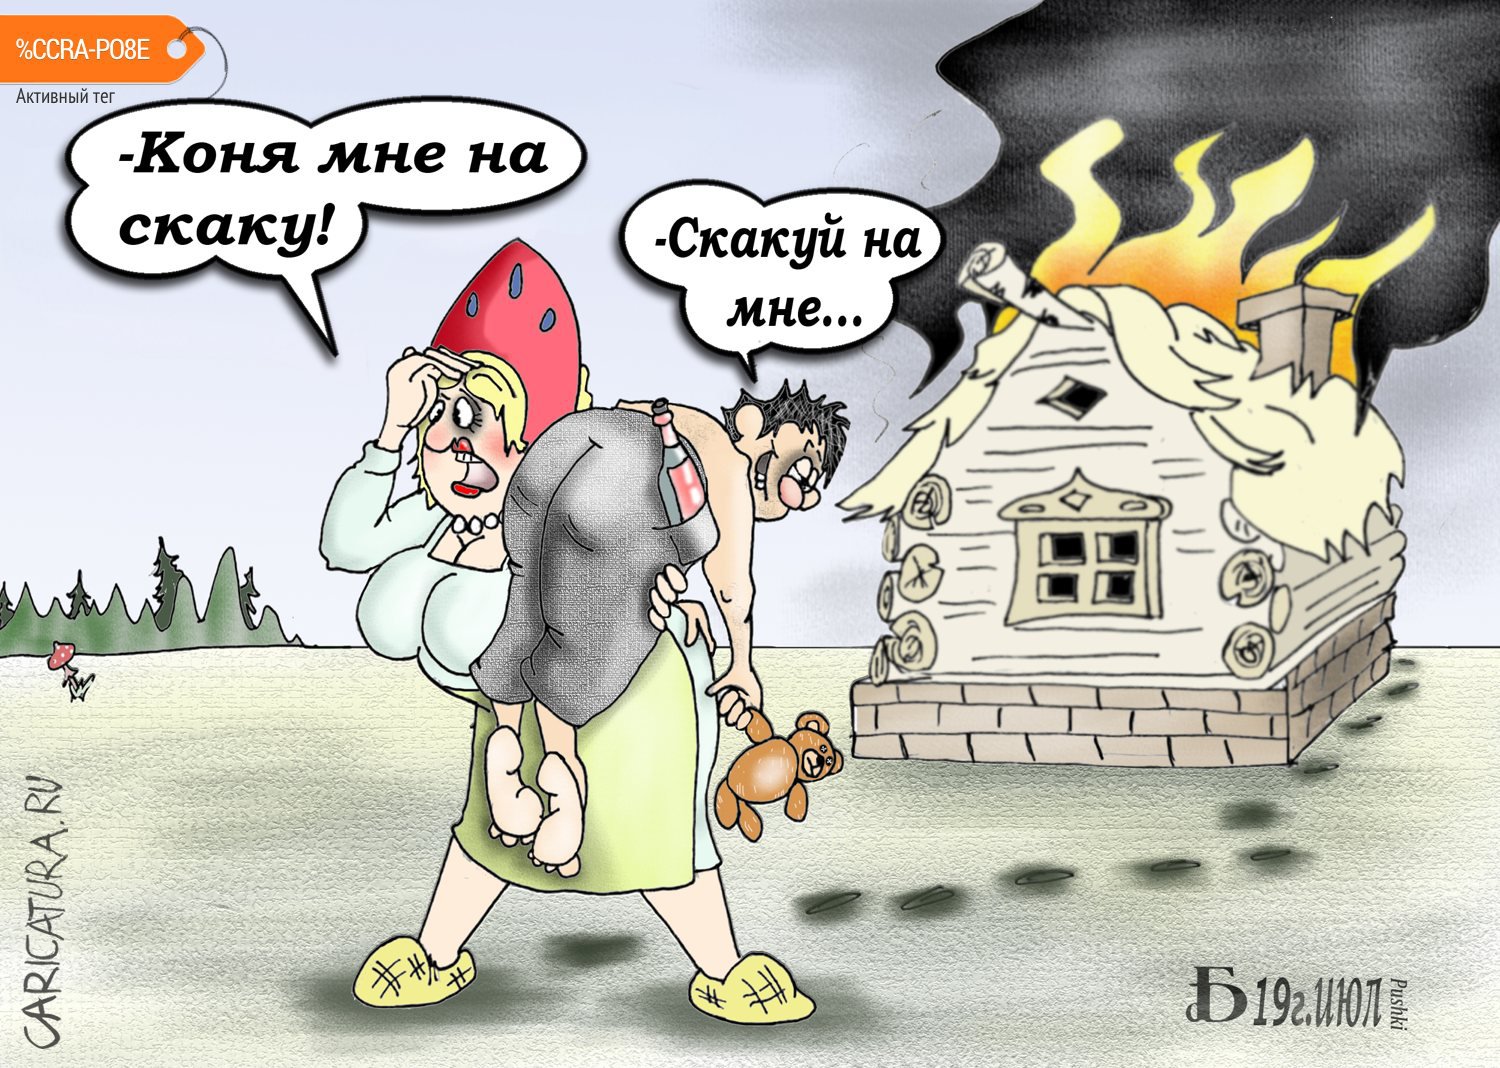 Карикатура "Проскаку", Борис Демин